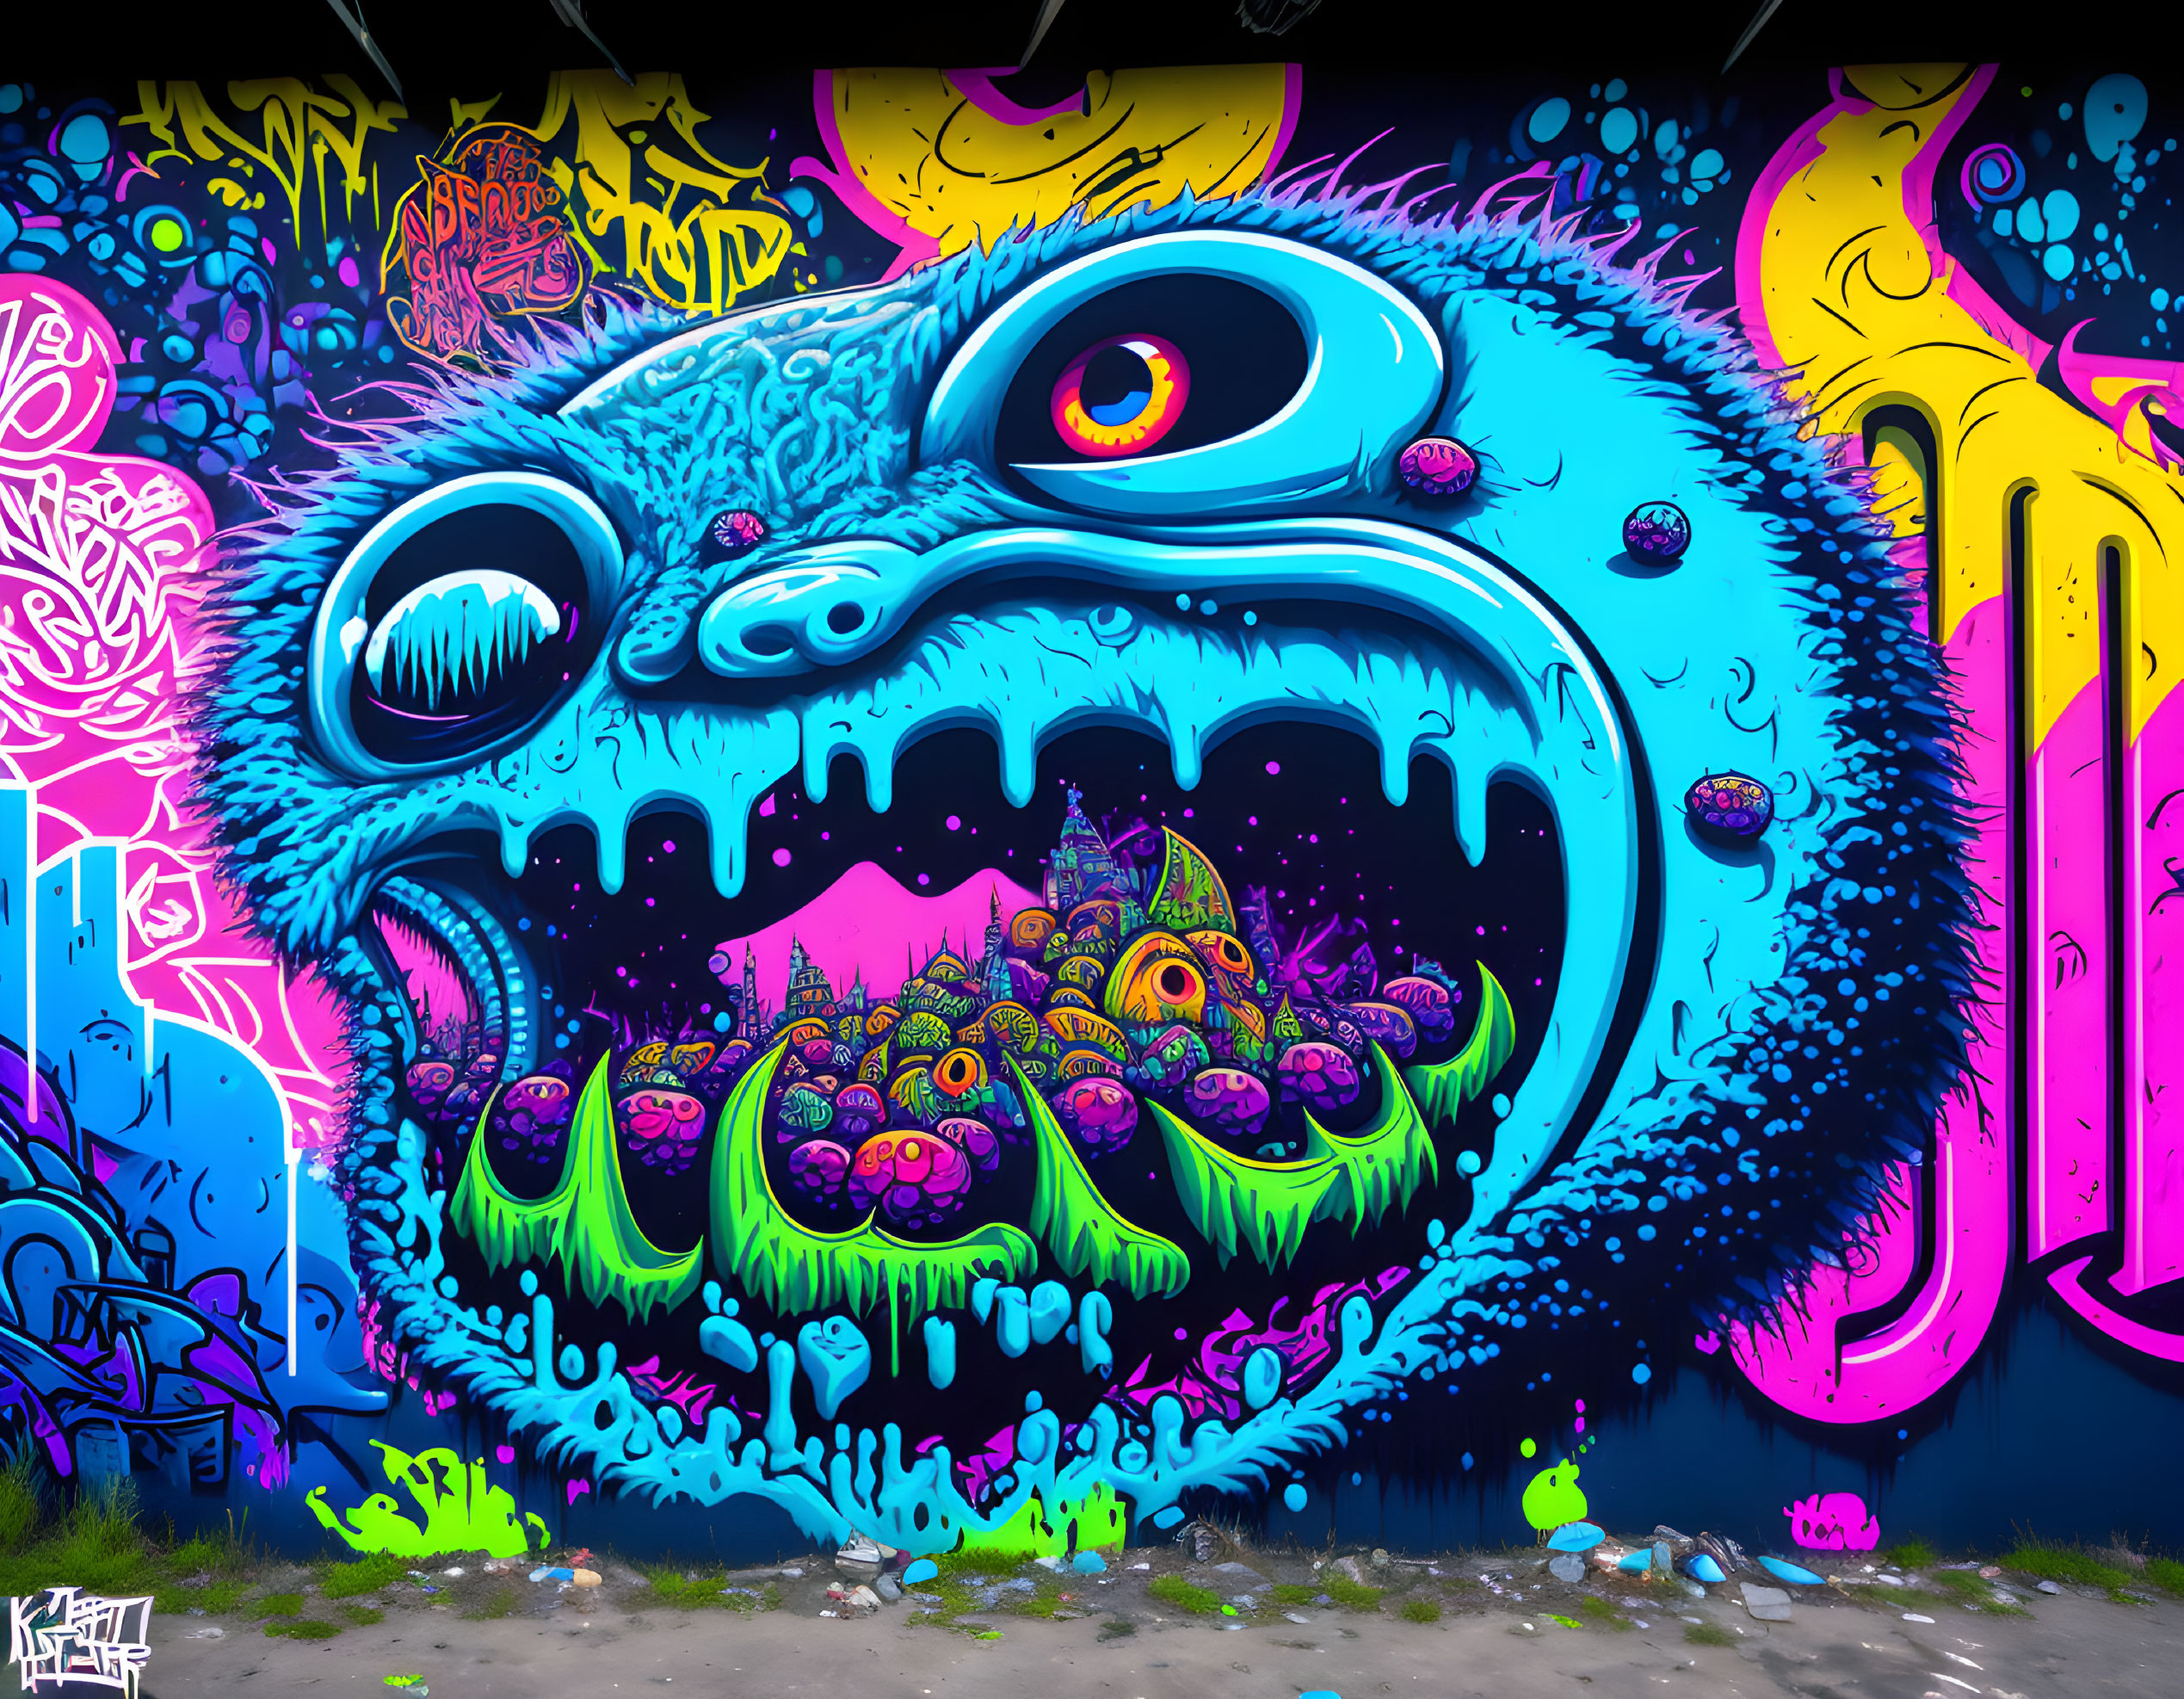 The bleberry monster graffiti